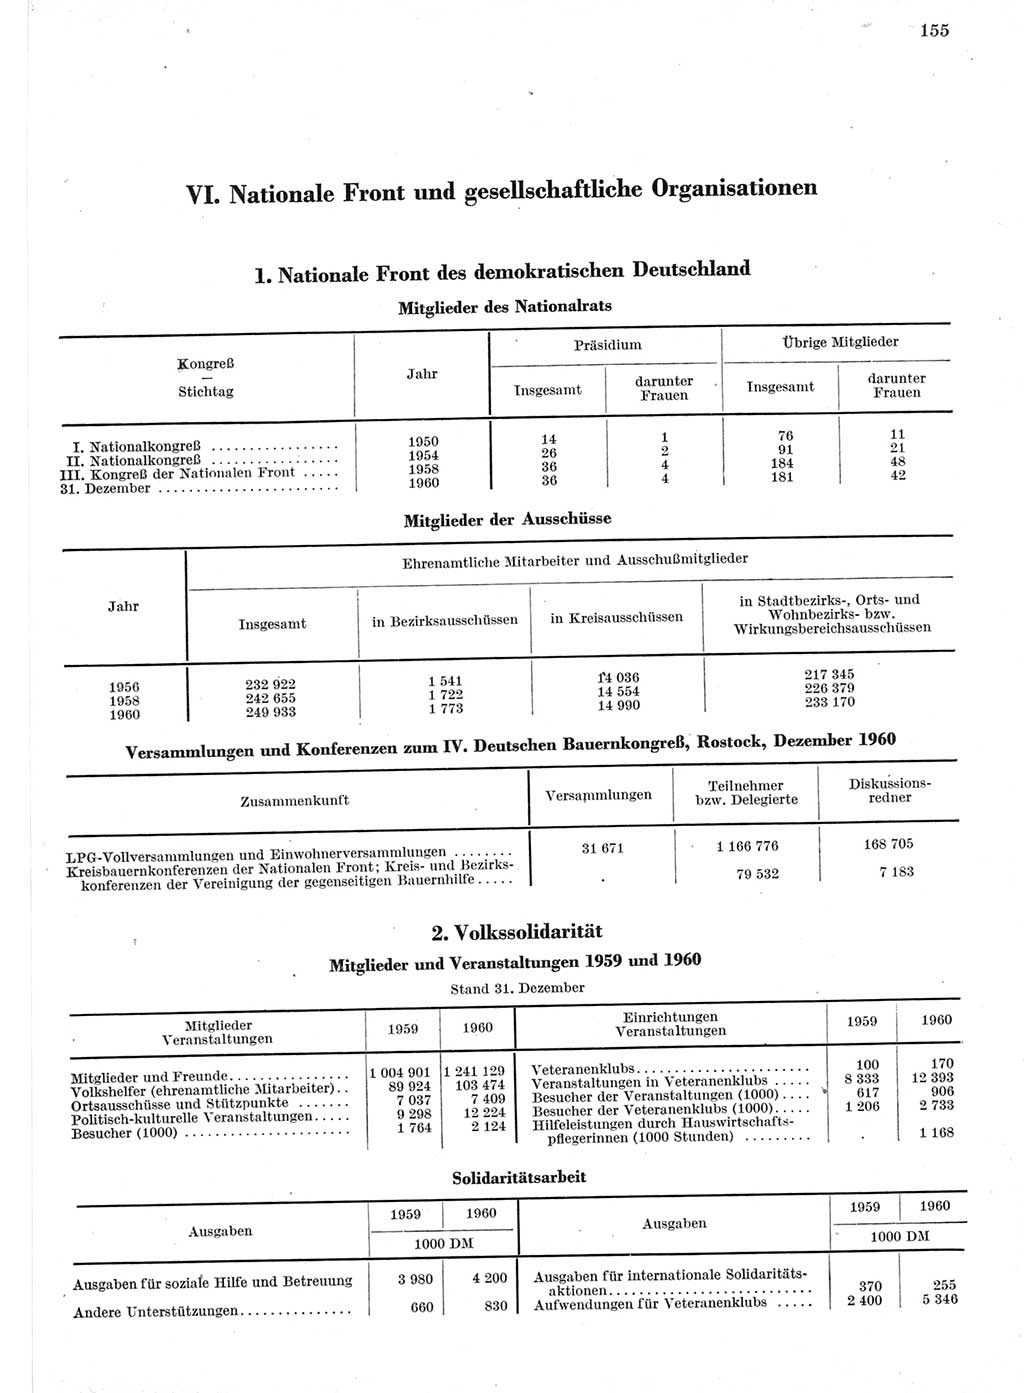 Statistisches Jahrbuch der Deutschen Demokratischen Republik (DDR) 1960-1961, Seite 155 (Stat. Jb. DDR 1960-1961, S. 155)